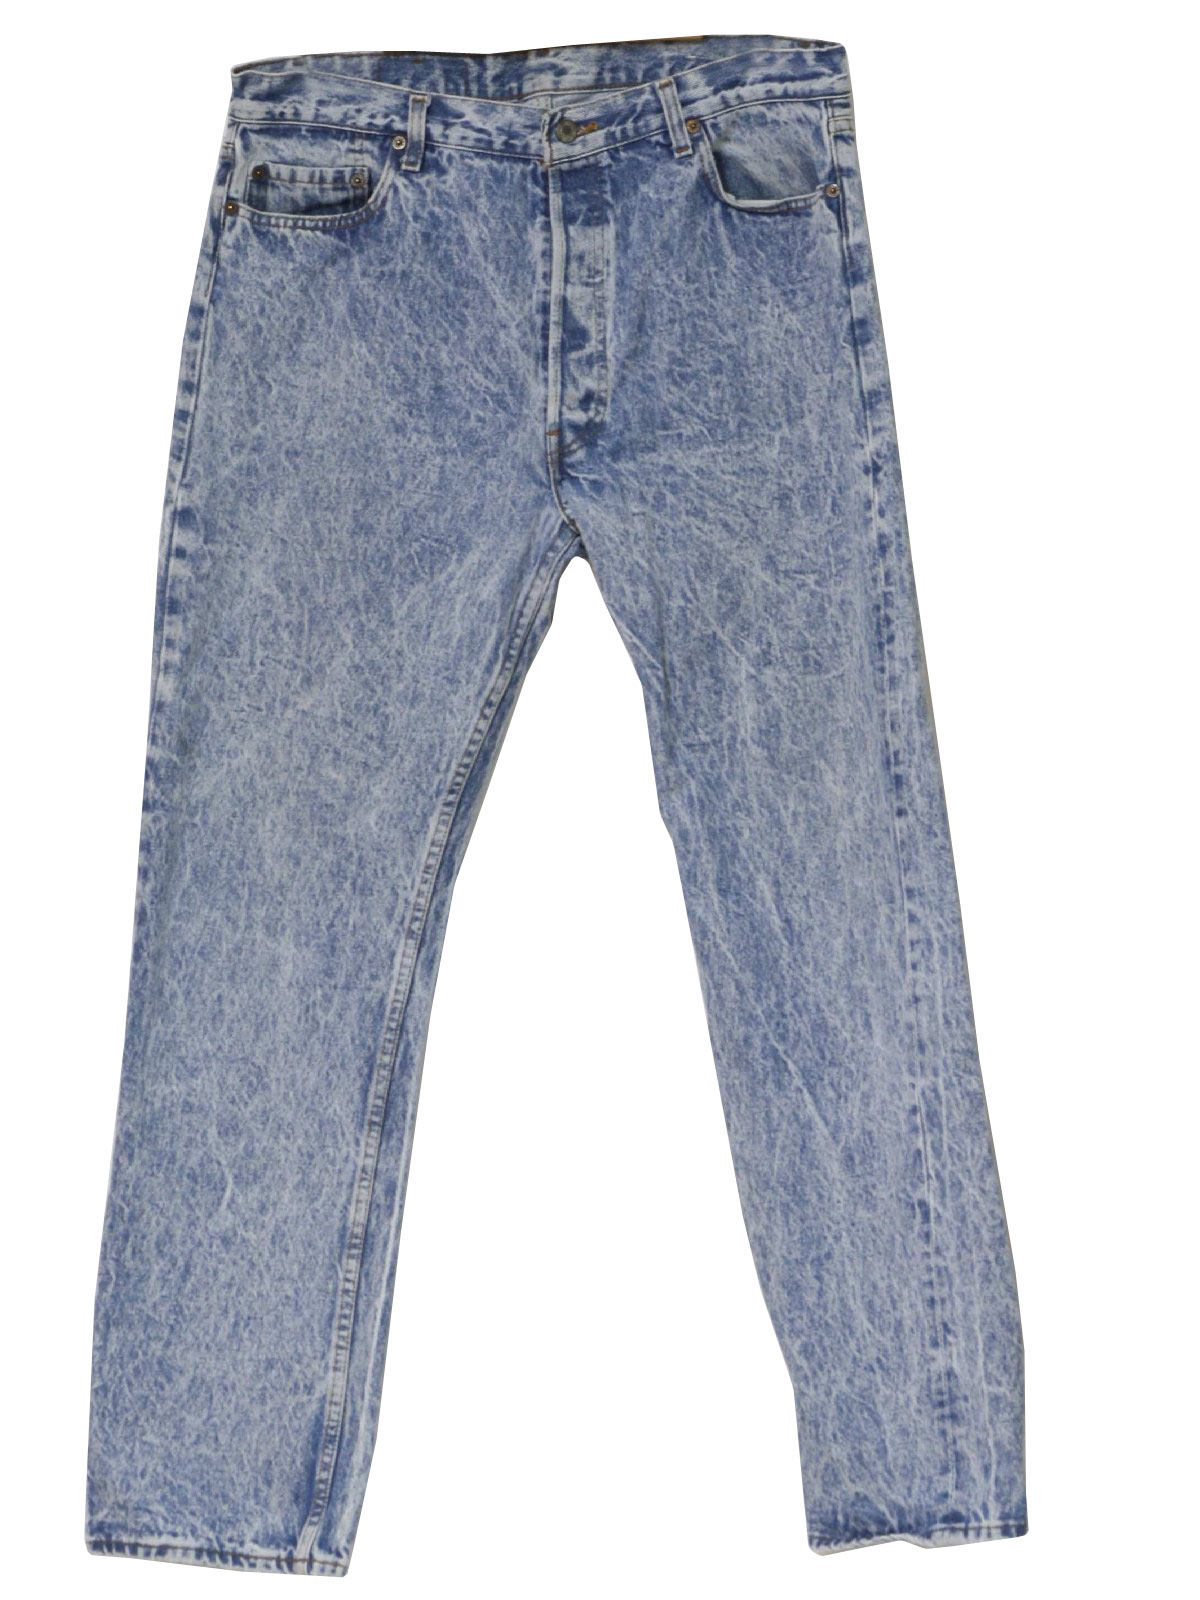 Retro 1980s Pants: 80s -Levis- Mens blue cotton denim acid wash jeans ...